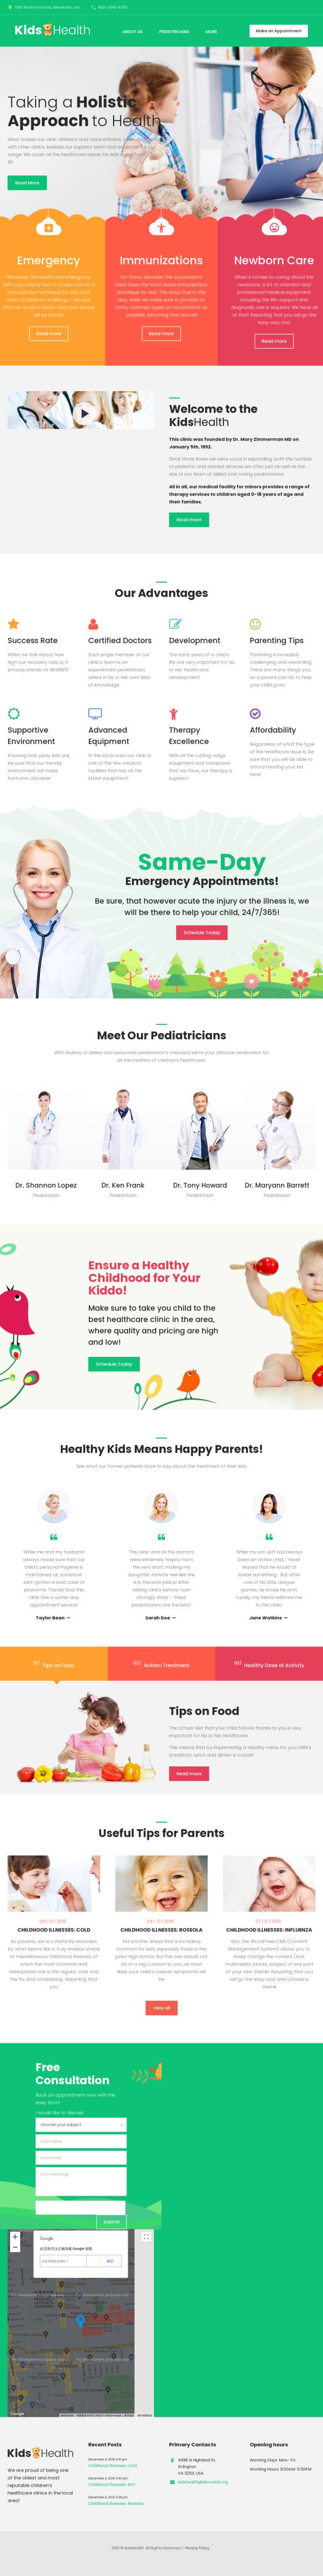 简洁大气html儿科医疗健康网站模板